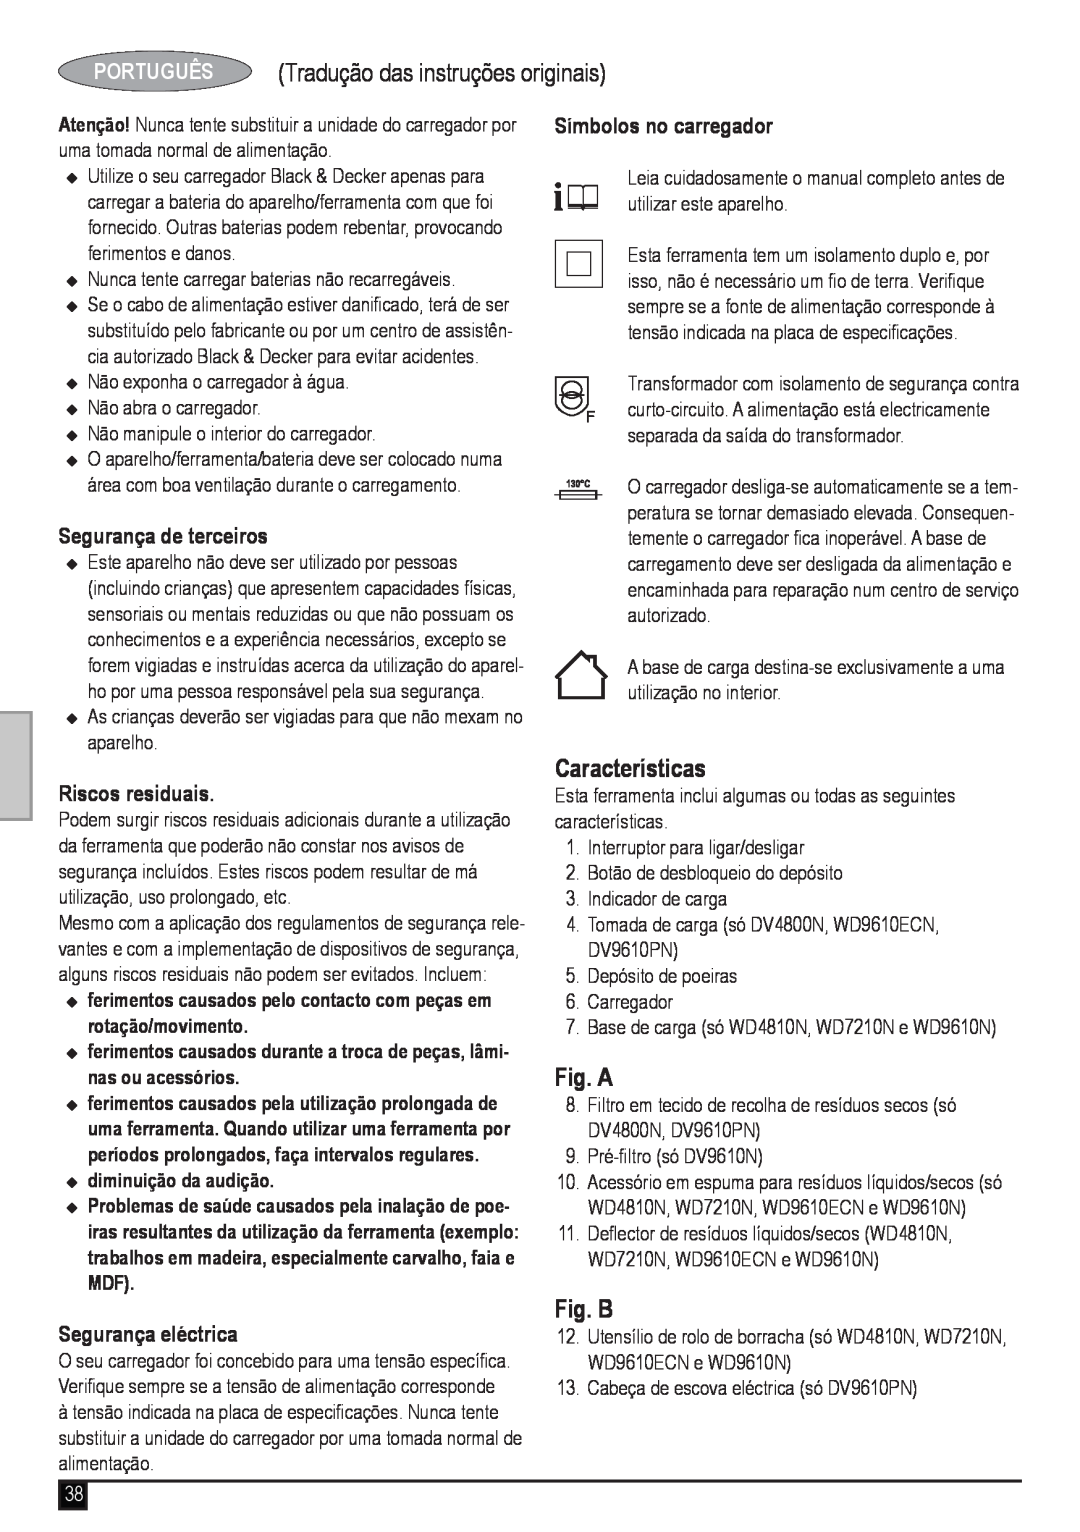 Black & Decker WD7210N manual PORTUGUÊS Tradução das instruções originais, Segurança de terceiros, Riscos residuais, Fig. A 